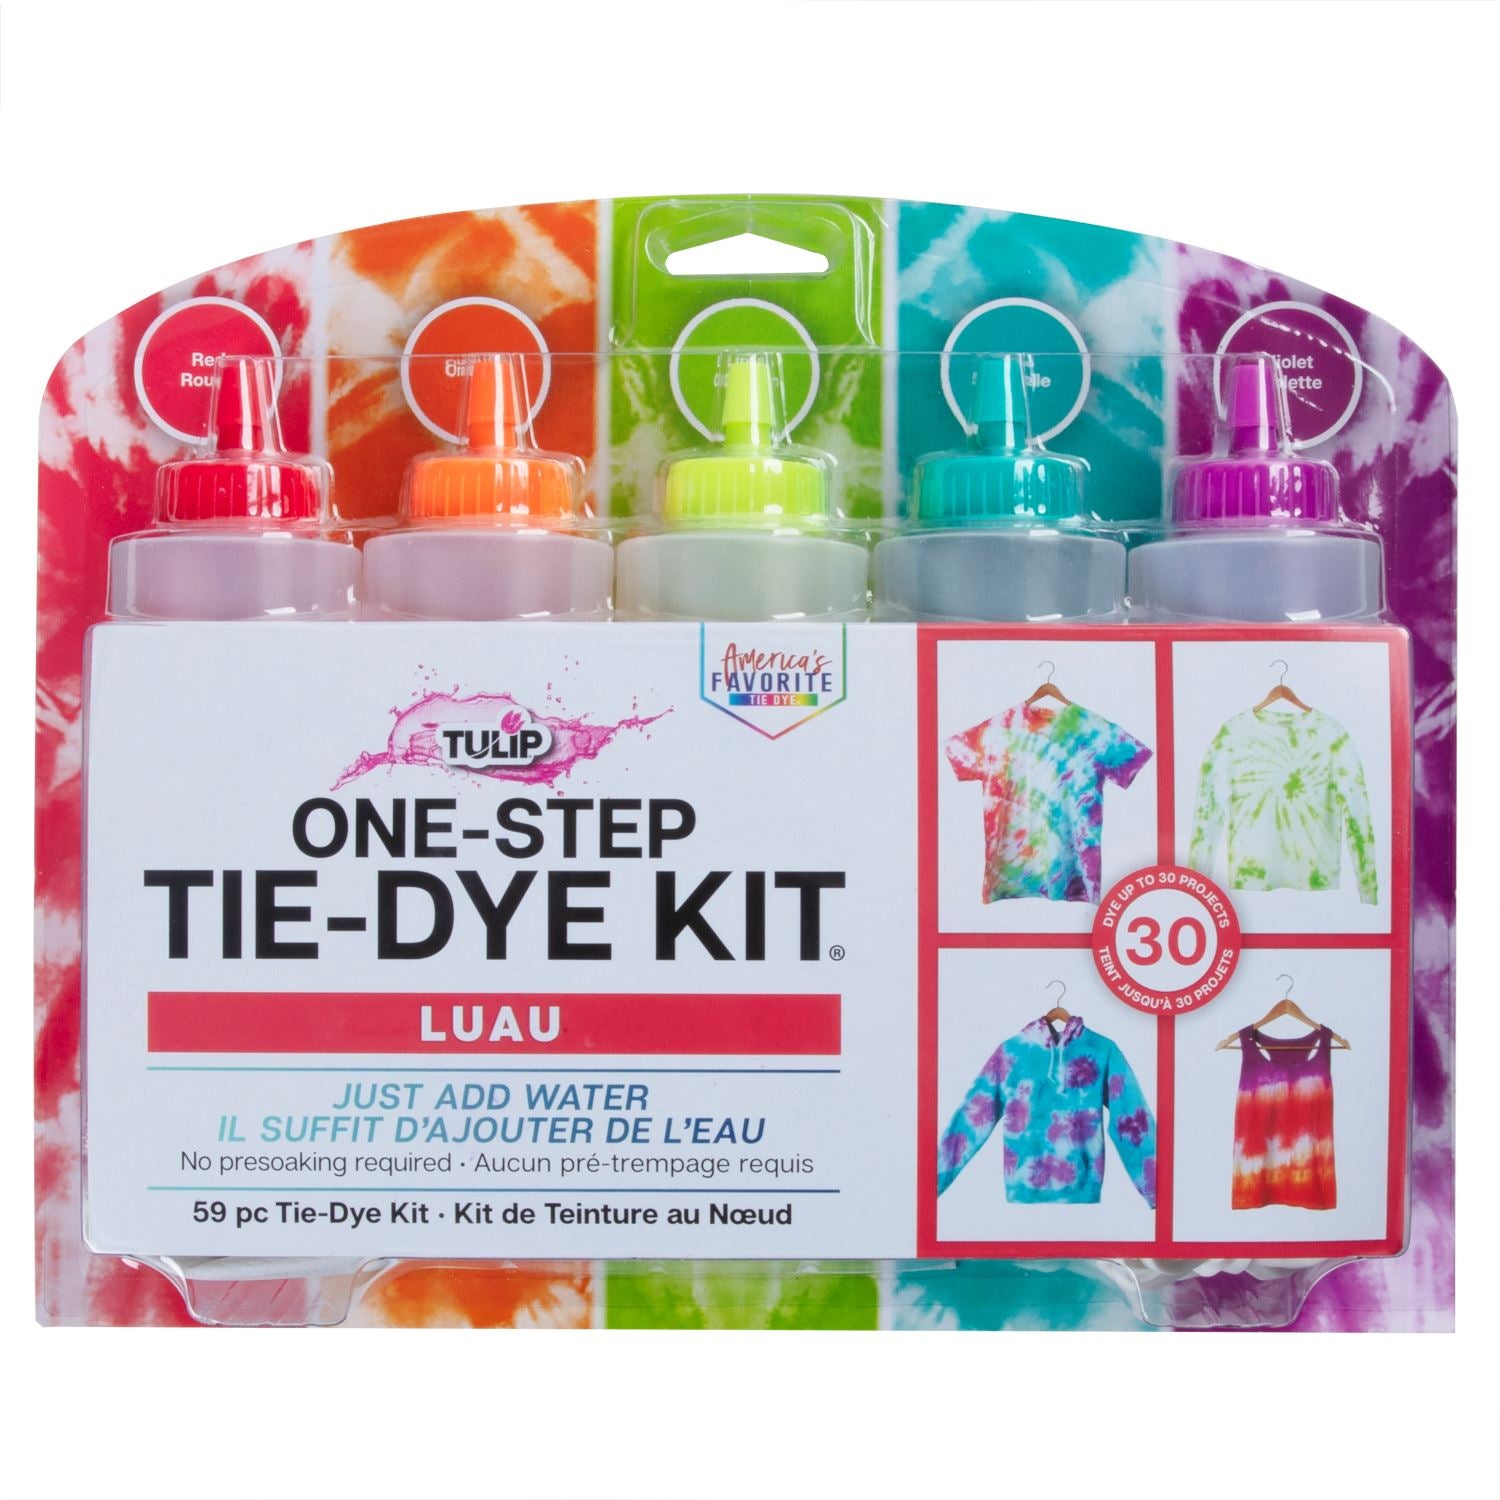 Tulip One-Step Tie Dye Kit, Classic